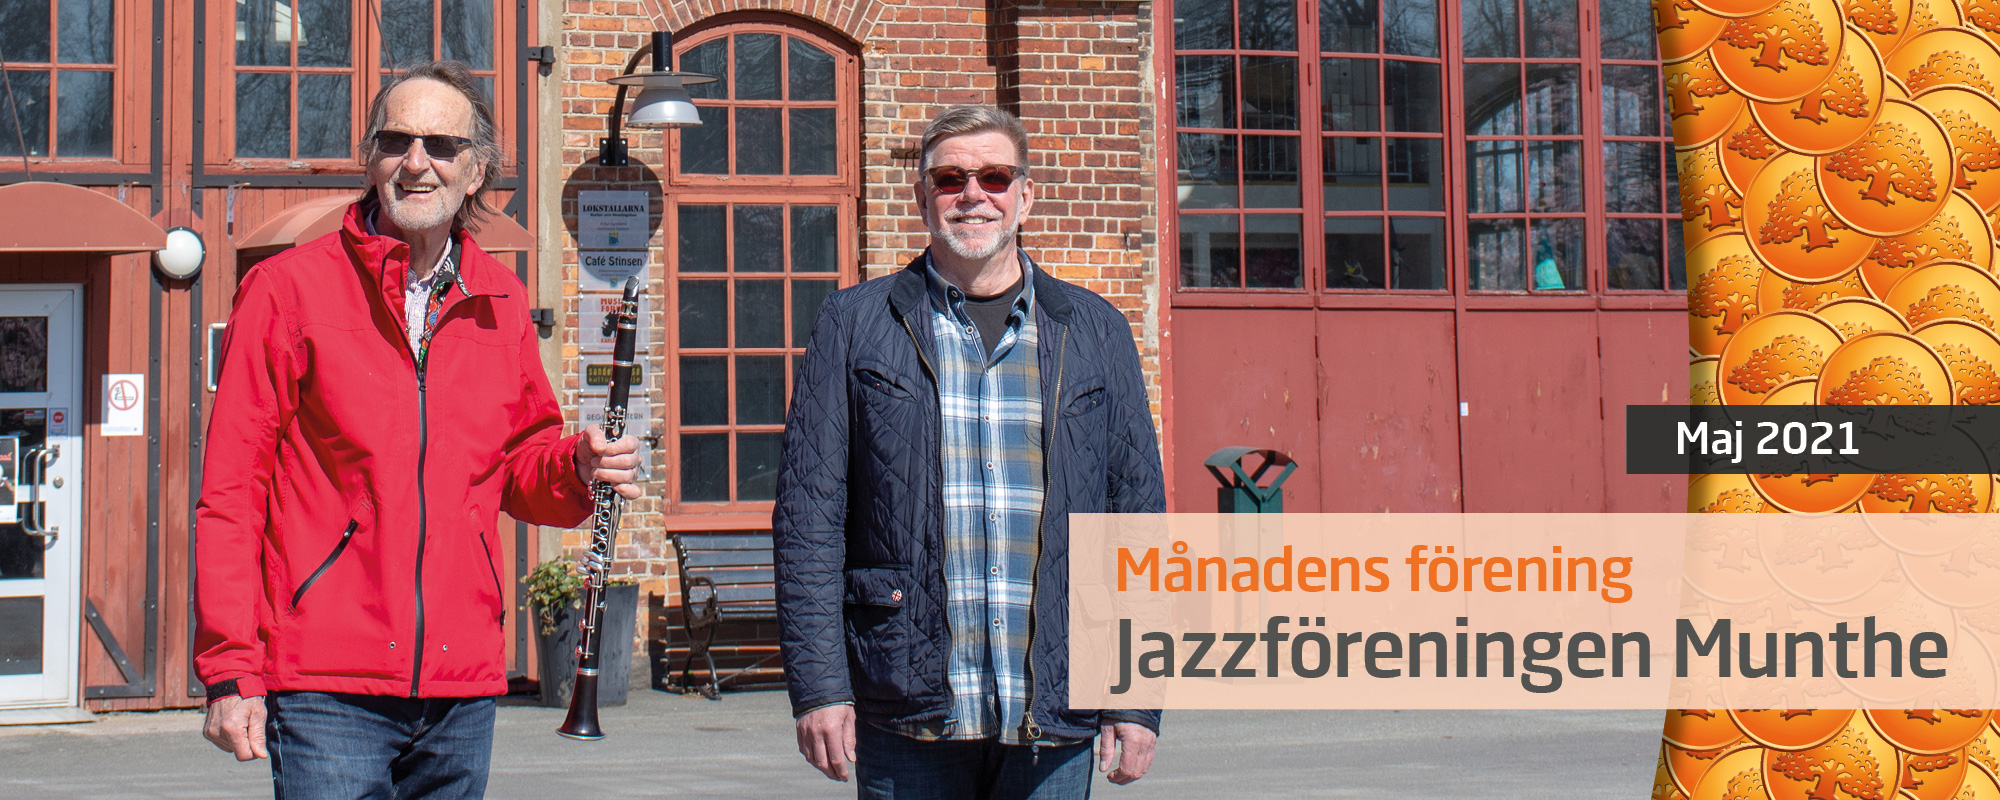 Olof Holst och Mats Berntsson från Jazzföreningen Munthe.